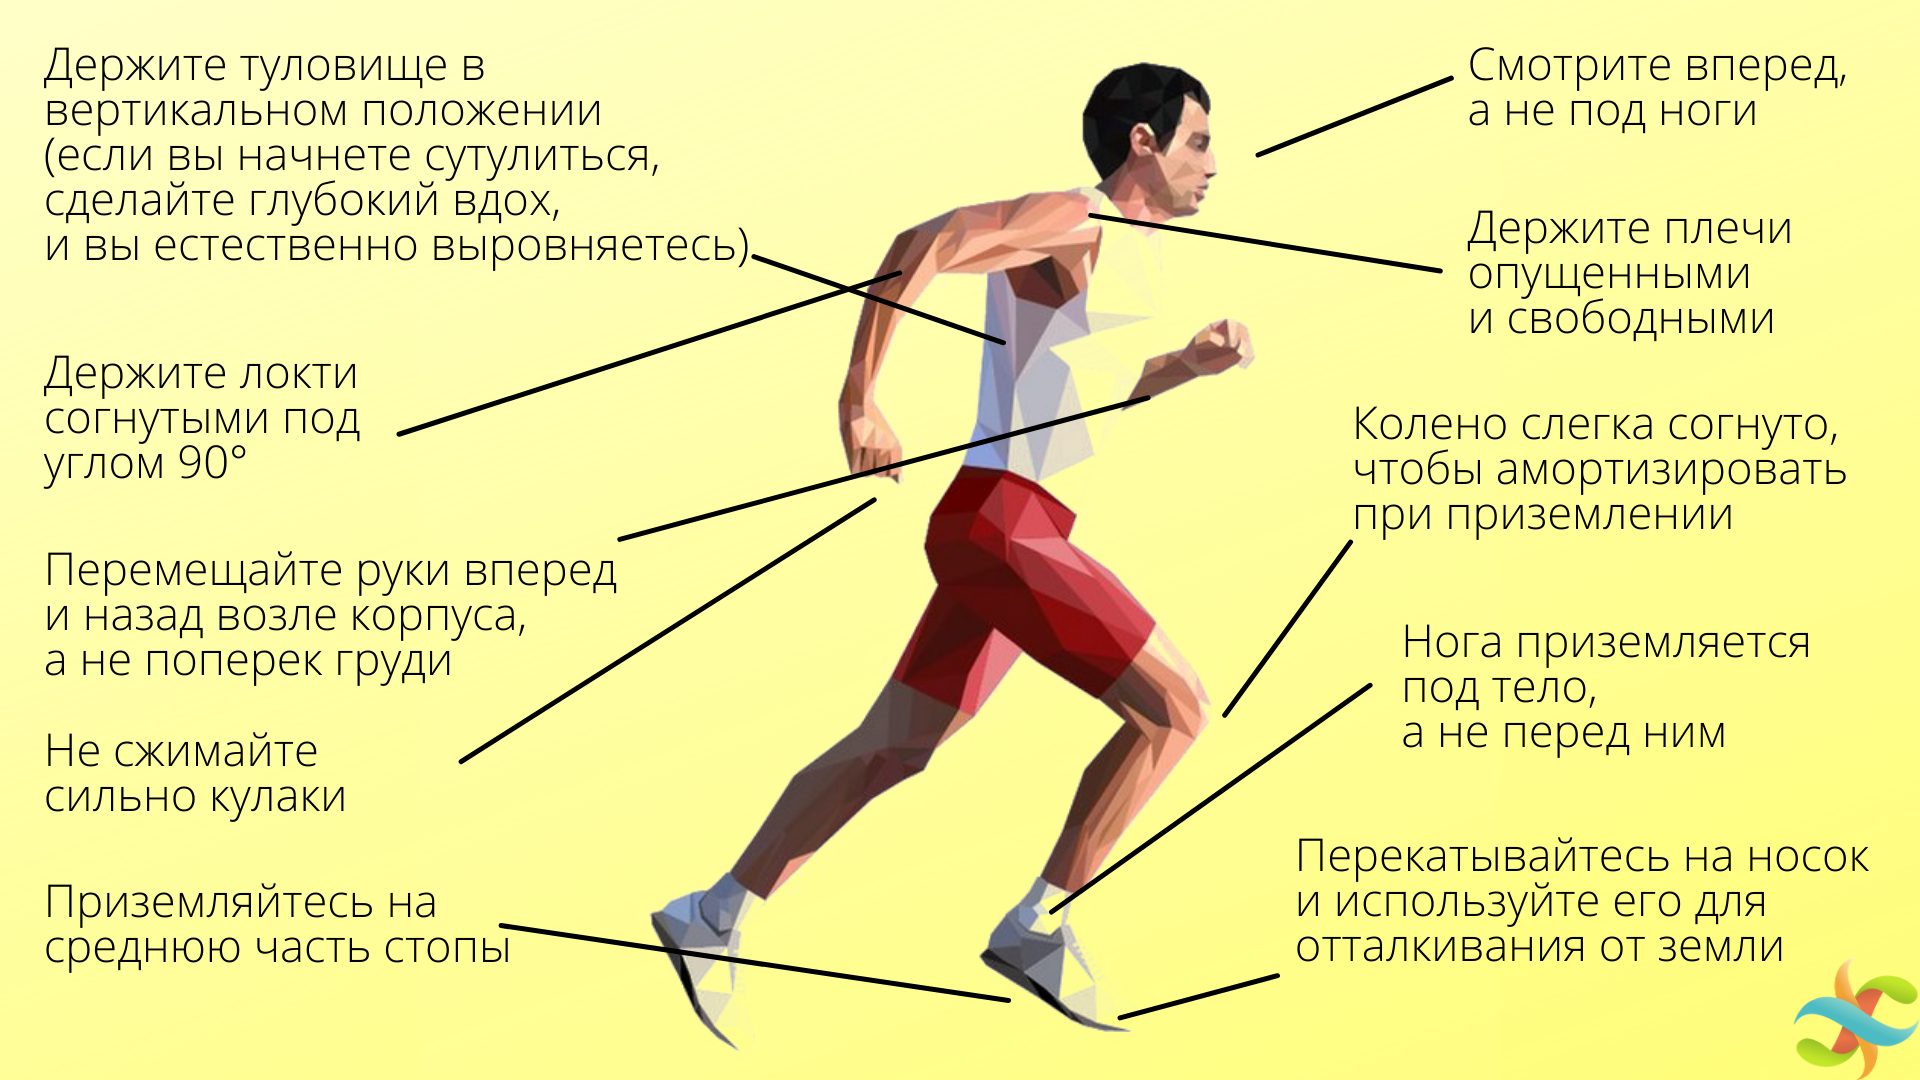 Как похудеть при помощи бега, но сохранить мышцы